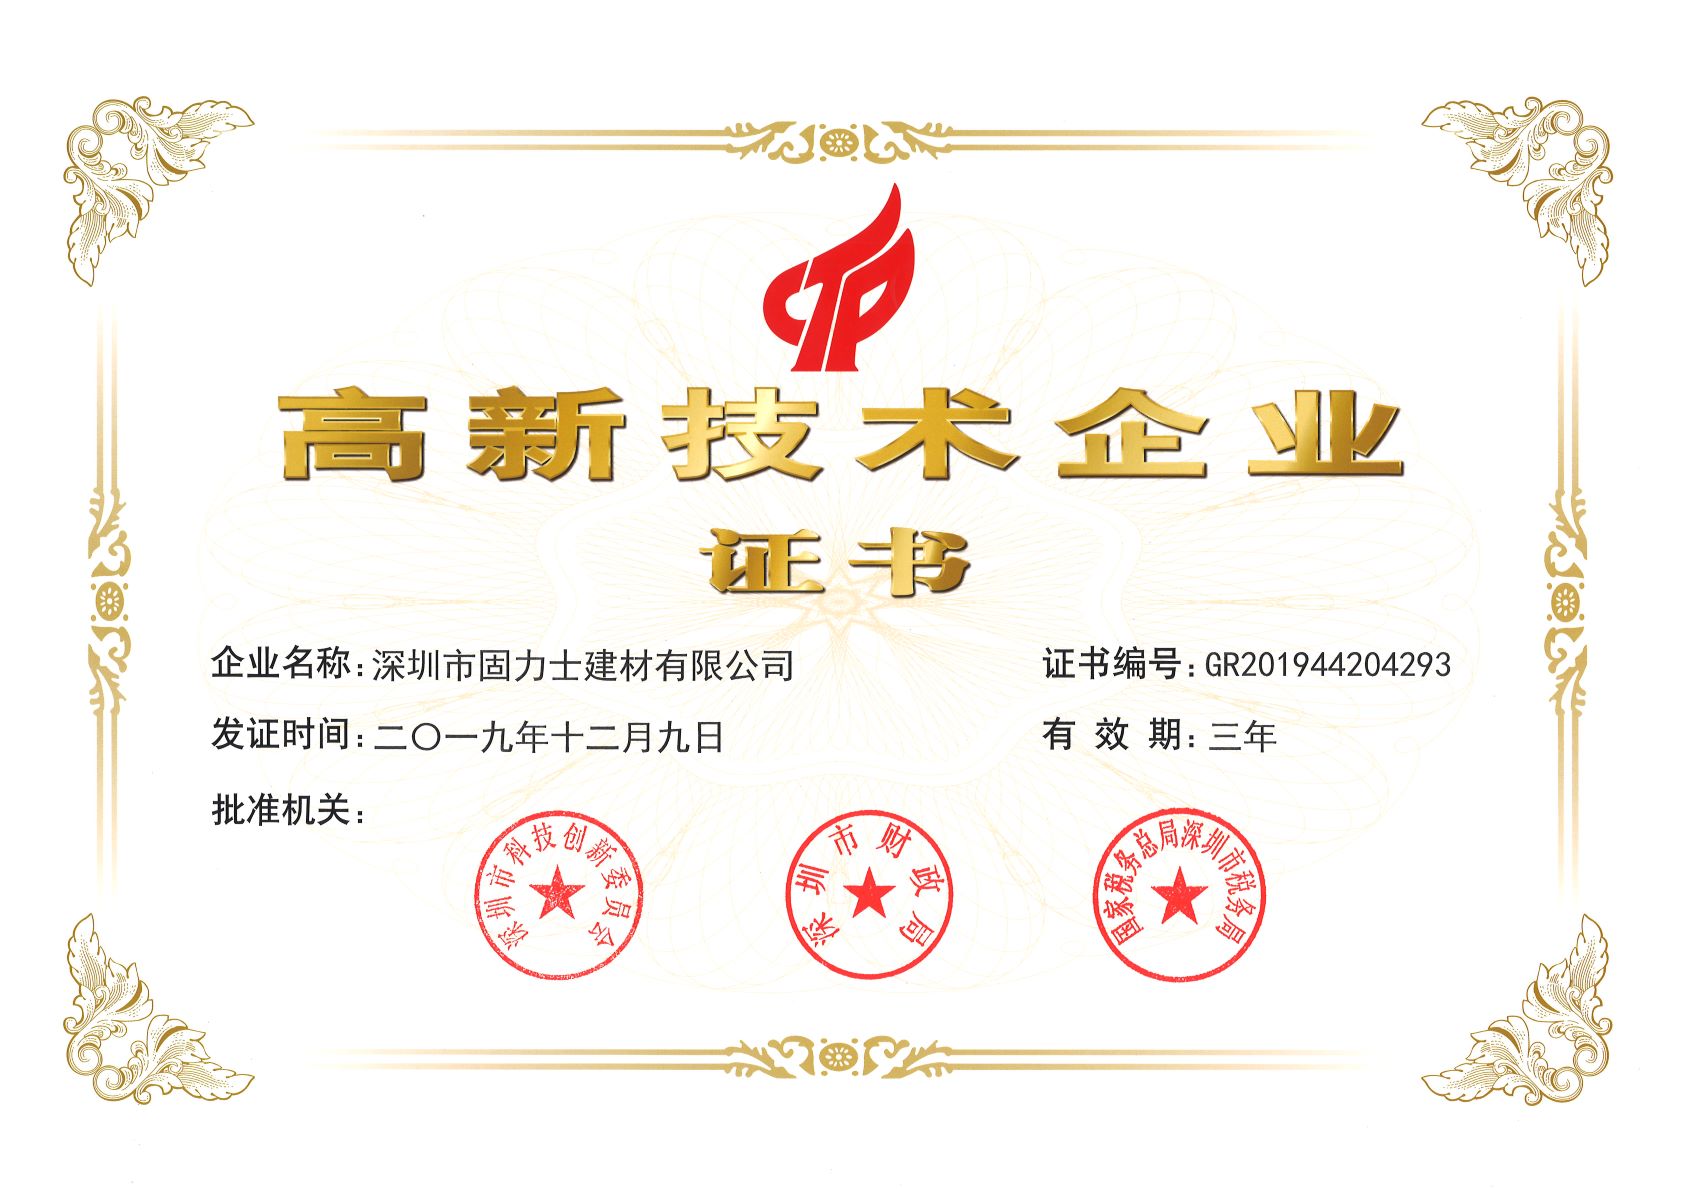 二道热烈祝贺深圳市固力士建材有限公司通过高新技术企业认证